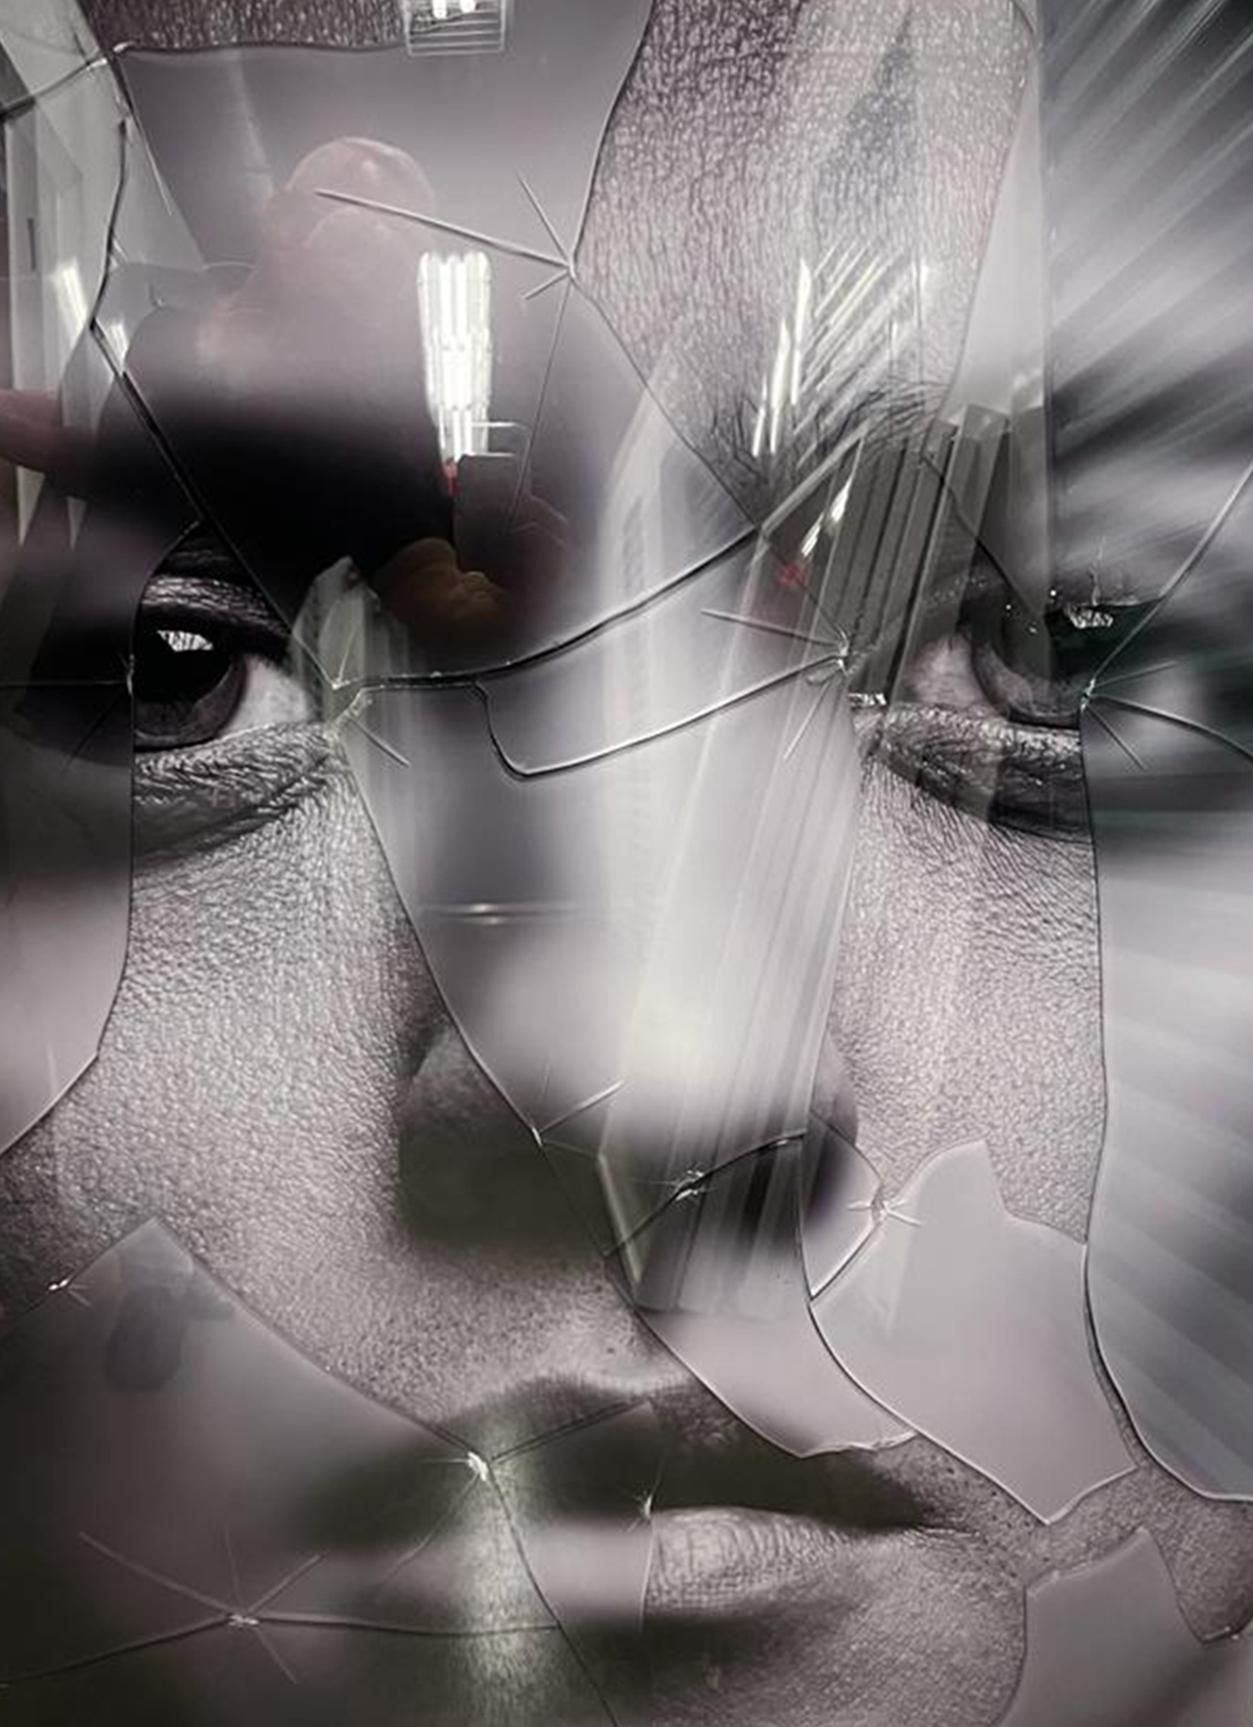 Bruno Mars, Porträt von Hunter & Gatti 
Schwarz-Weiß-Fotografie mit Glasscherben oben auf dem Bild.
Bildgröße: 45,2 Zoll. H x 32,5 in. W
Rahmengröße: 52,5 Zoll. H x 39 in. B x 2 in. D
Einzigartig

Die Technik des Künstlers besteht in der Verwendung